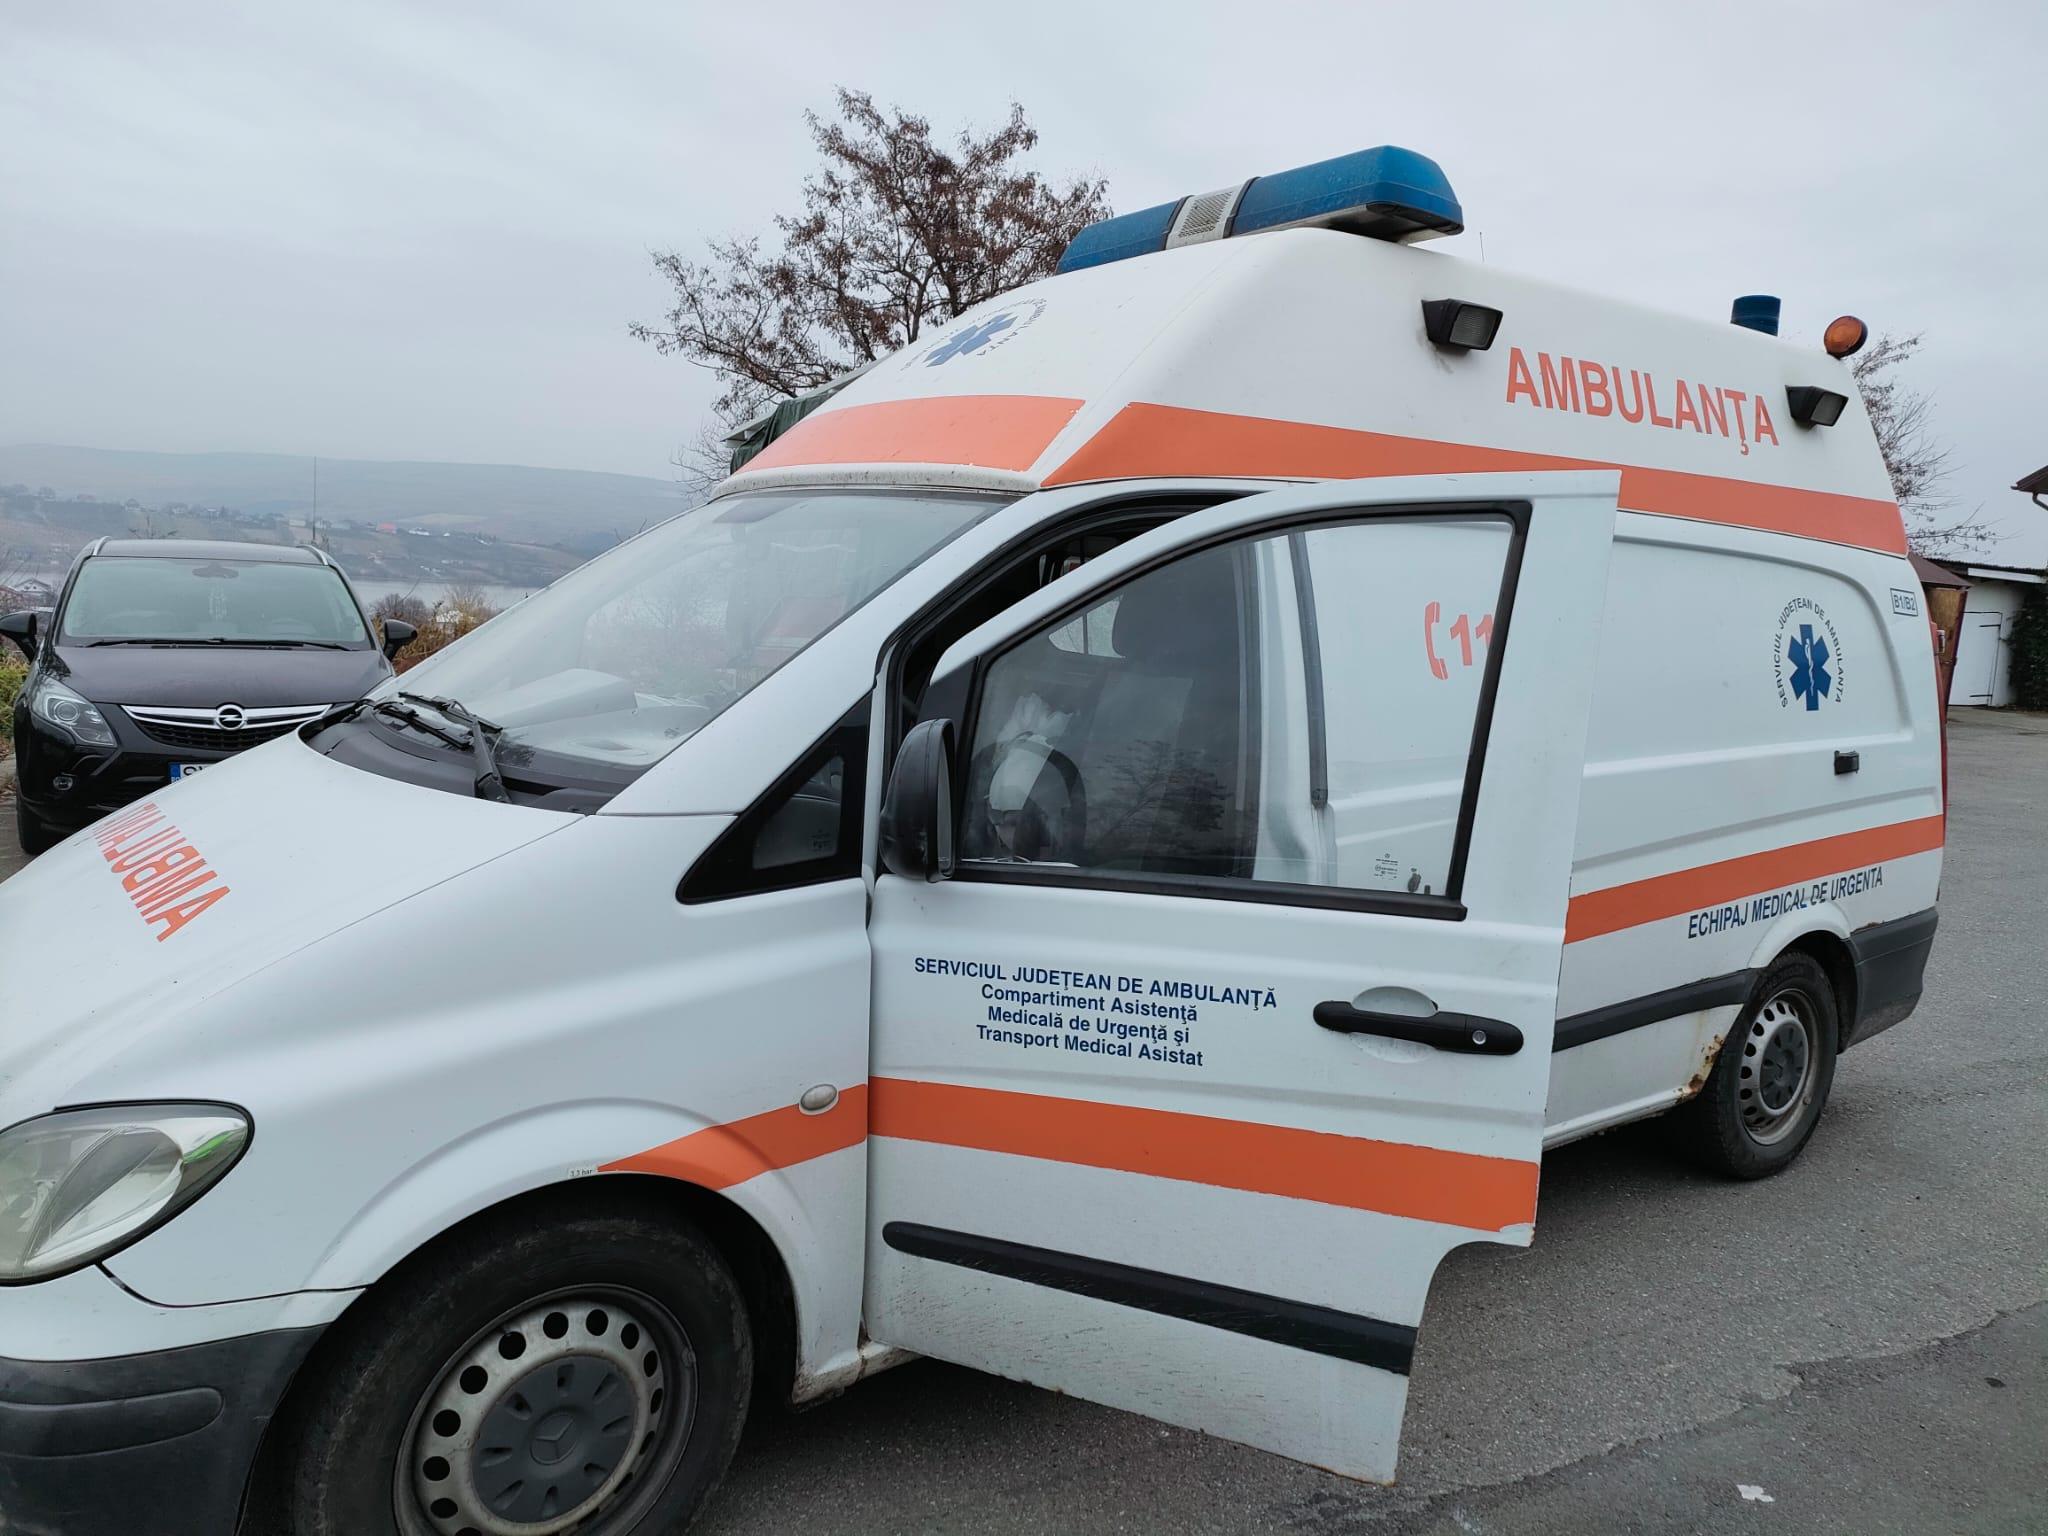 O ambulanță a luat foc în mers, la Suceava. Un pompier aflat în timpul liber a observat fumul și a sărit în ajutorul echipajului medical